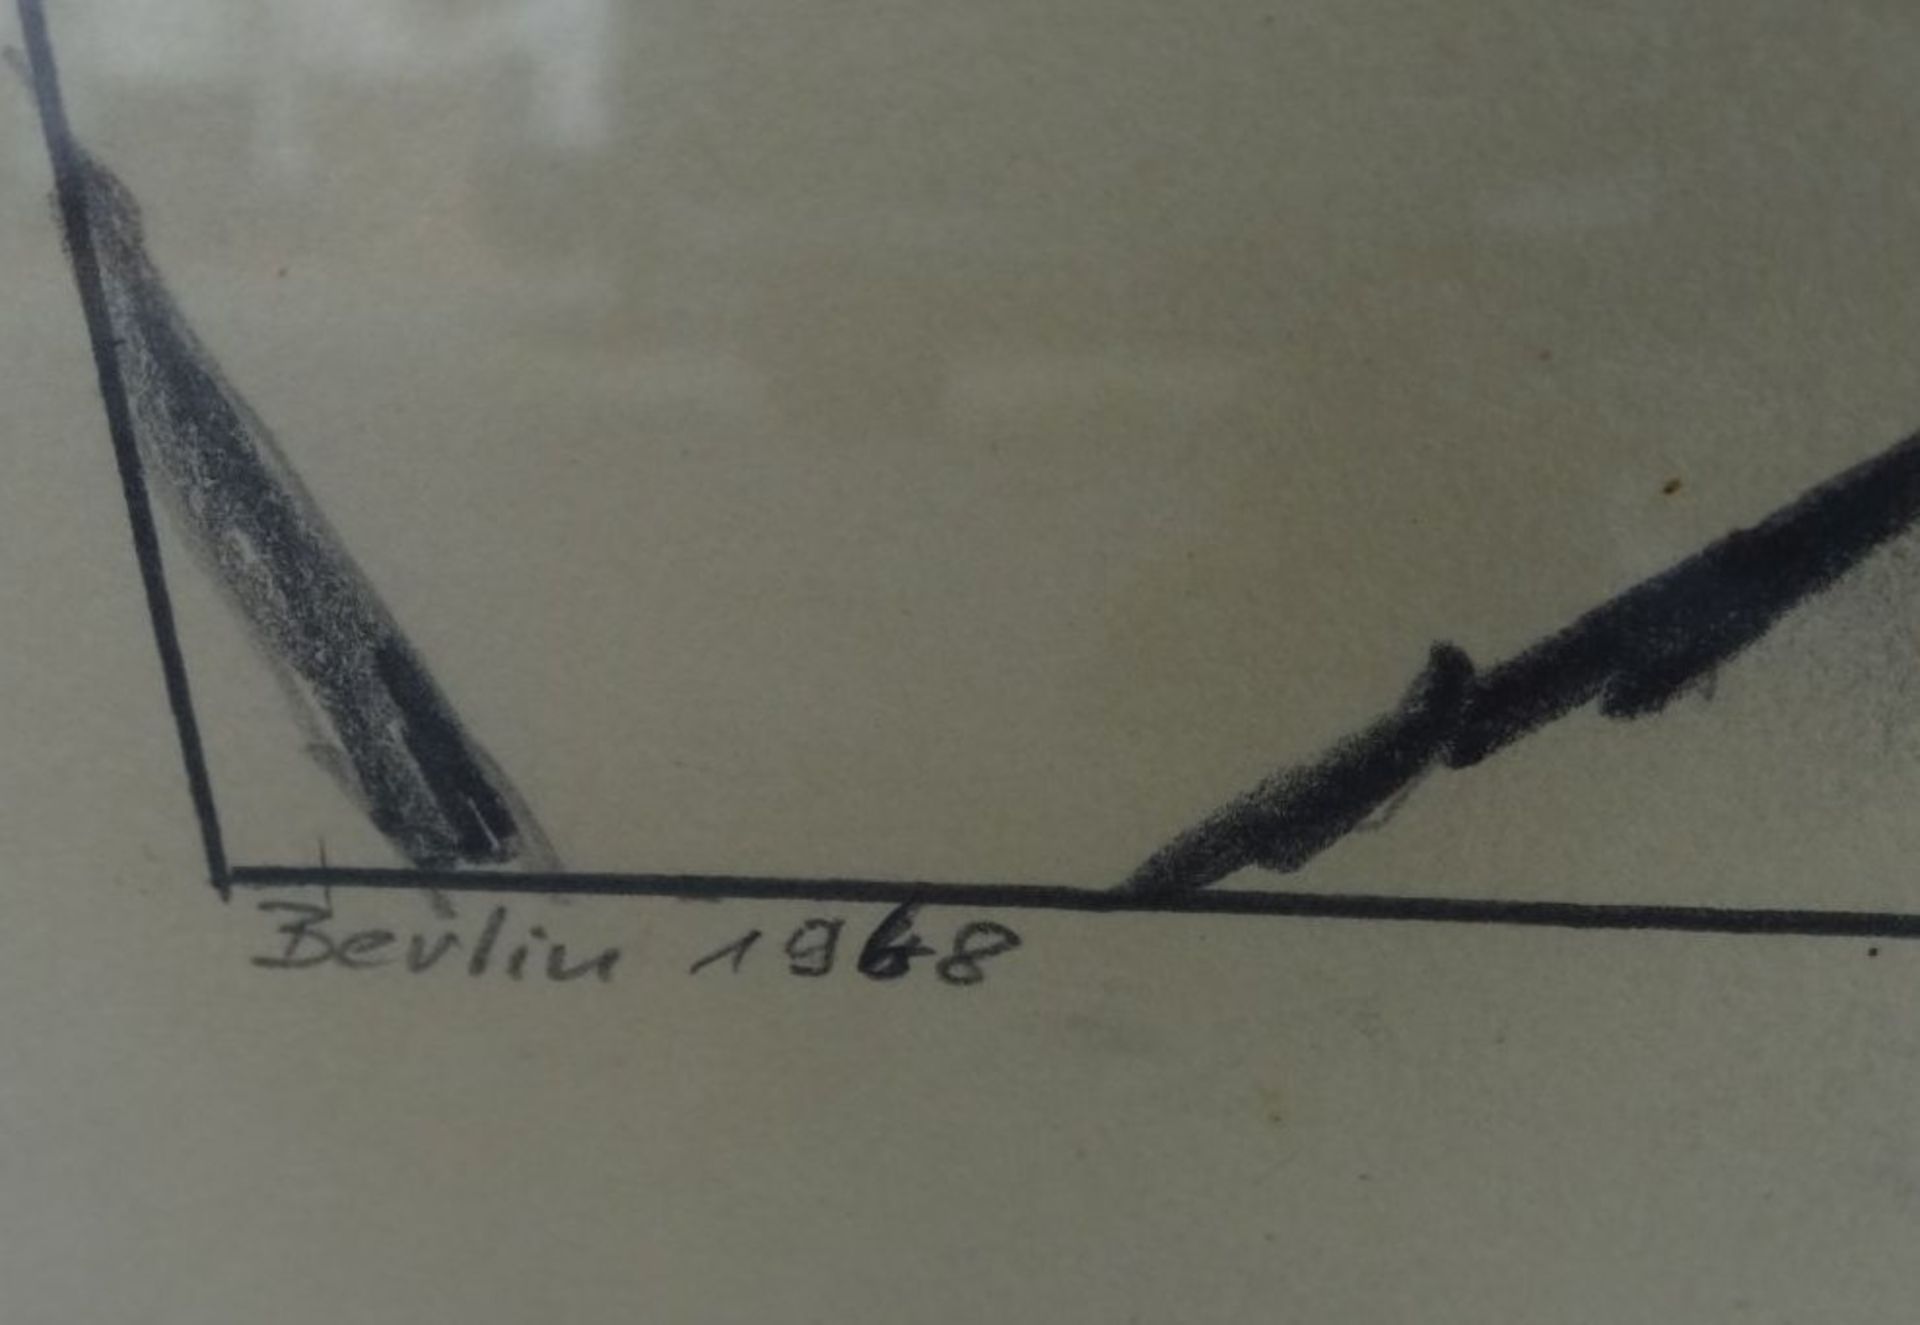 unleserl, signiert, 1975? "Studium" betitelte gr. Zeichnung, dat. 1968, ger/Glas, RG 89x68 cm - Image 5 of 7